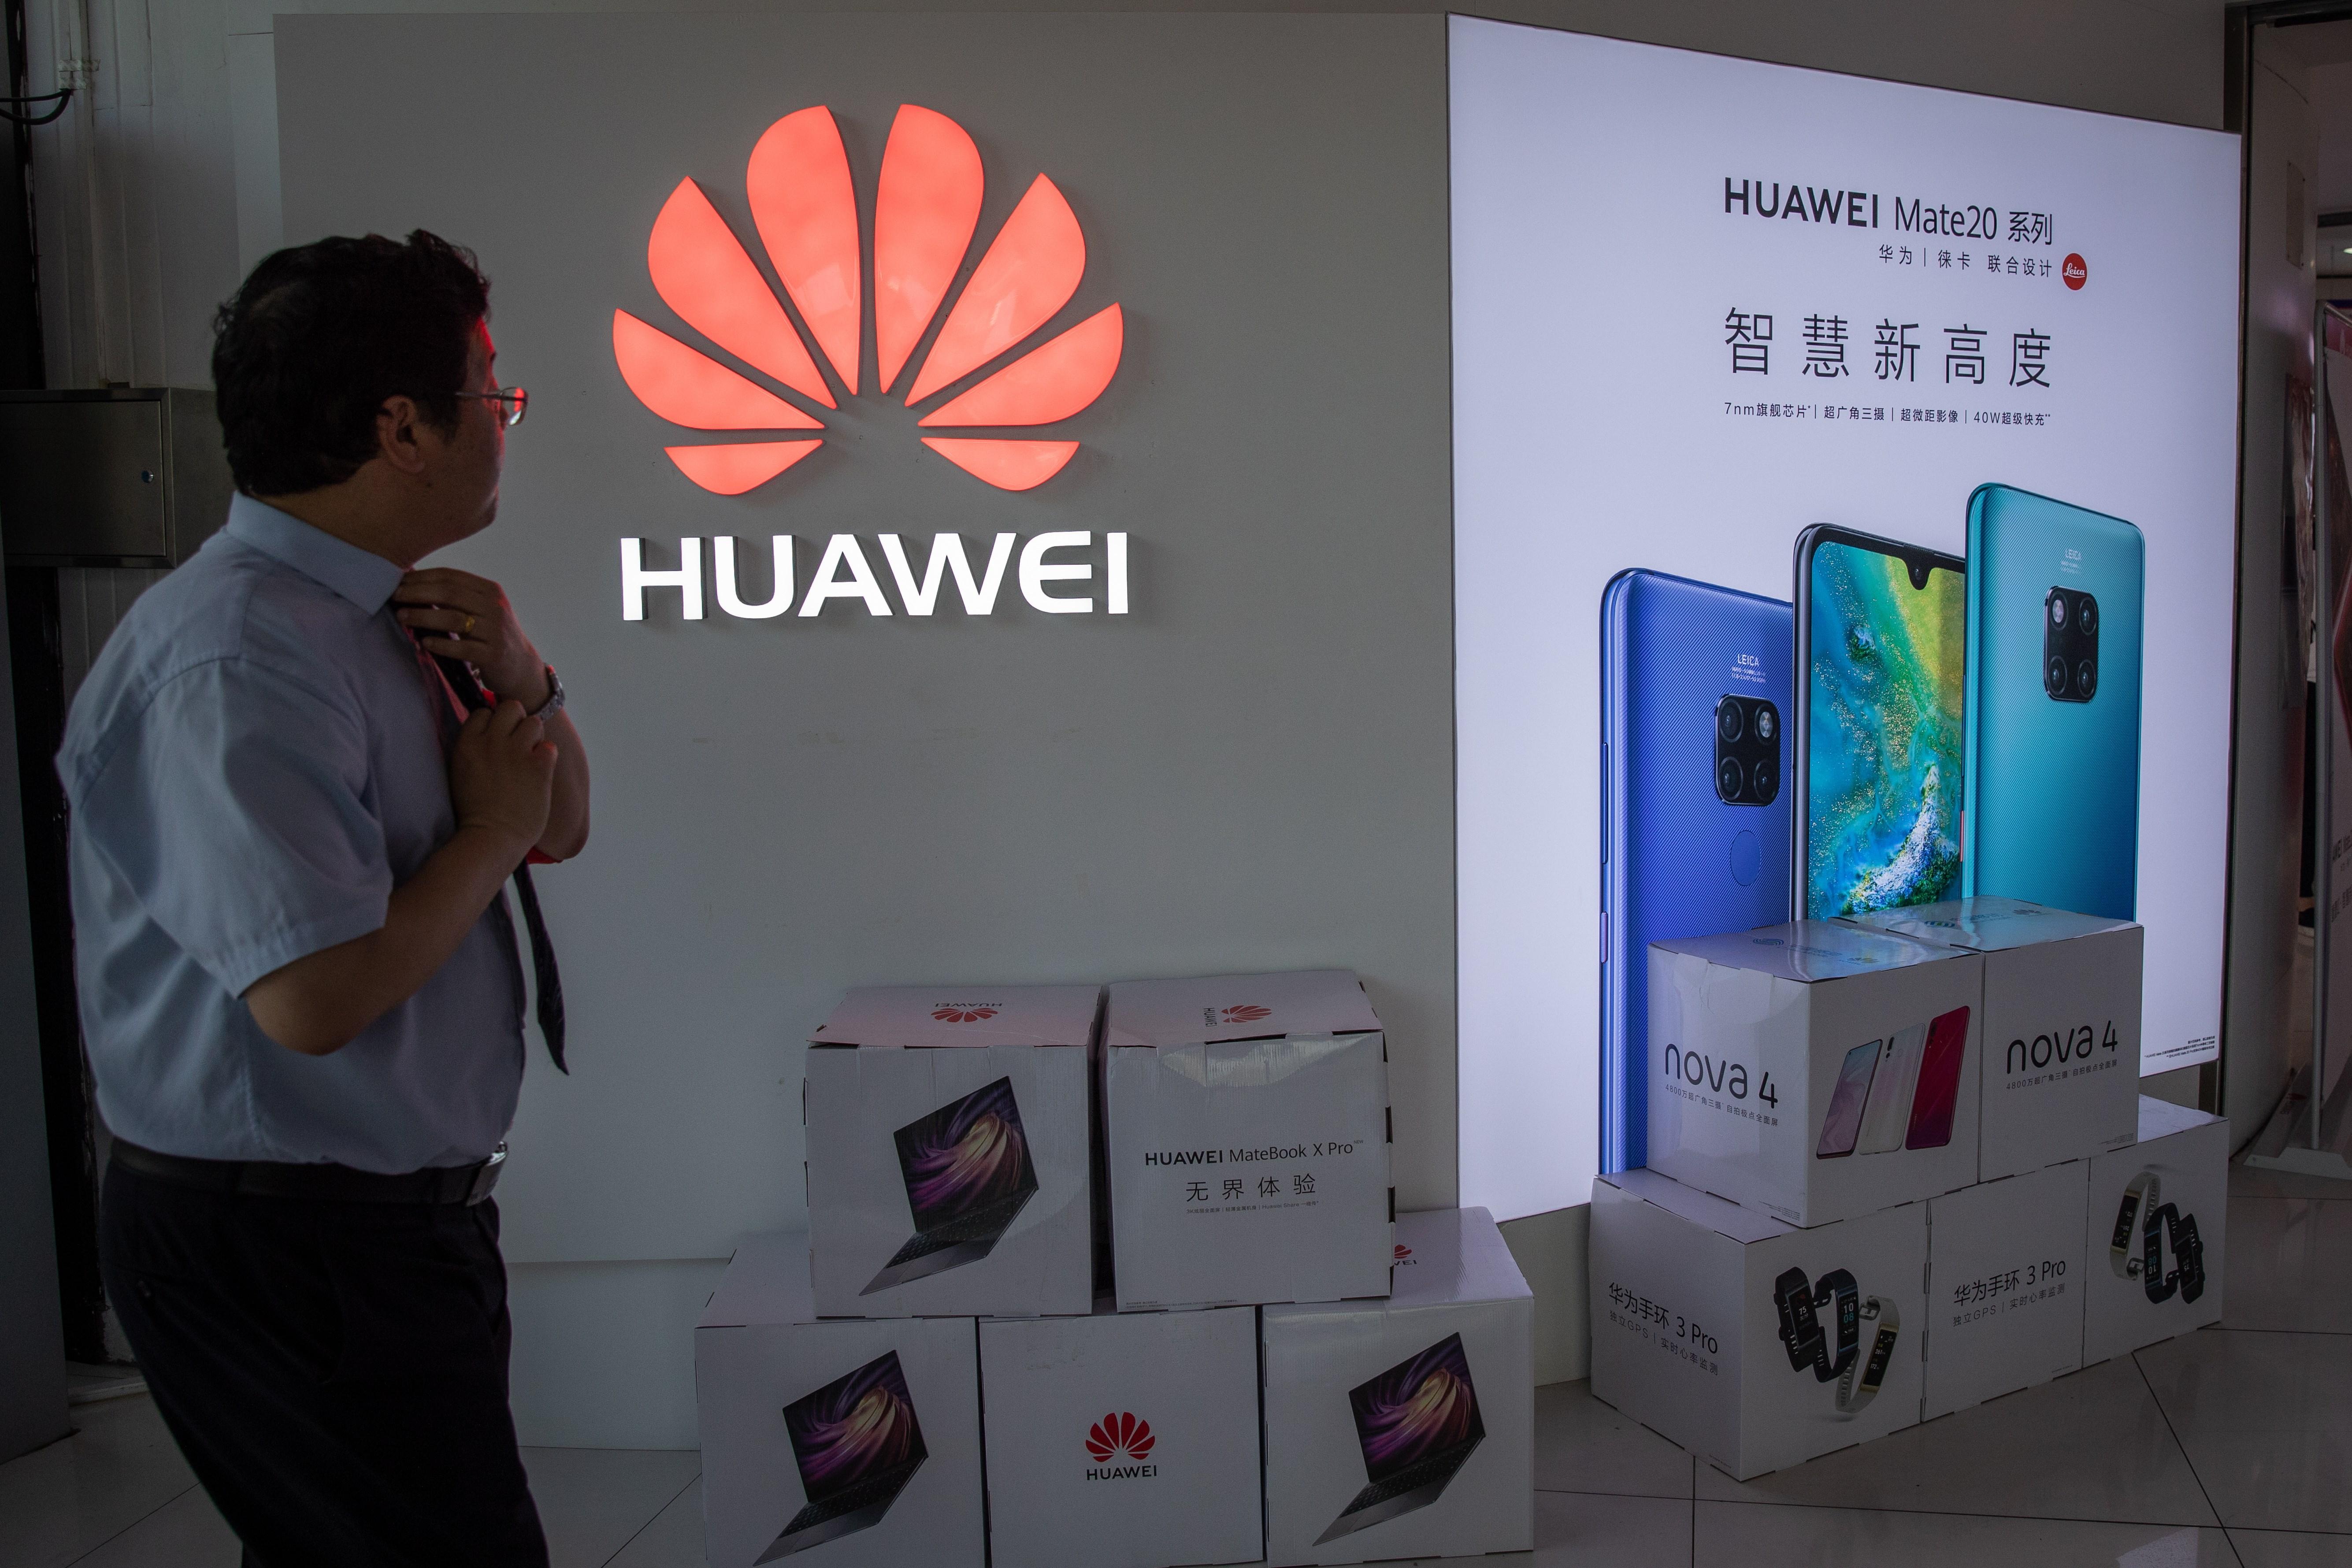 El veto de Google y otras tecnológicas estadounidenses a Huawei podría frustrar la aspiración del fabricante chino de liderar ese sector. (Foto Prensa Libre: EFE)